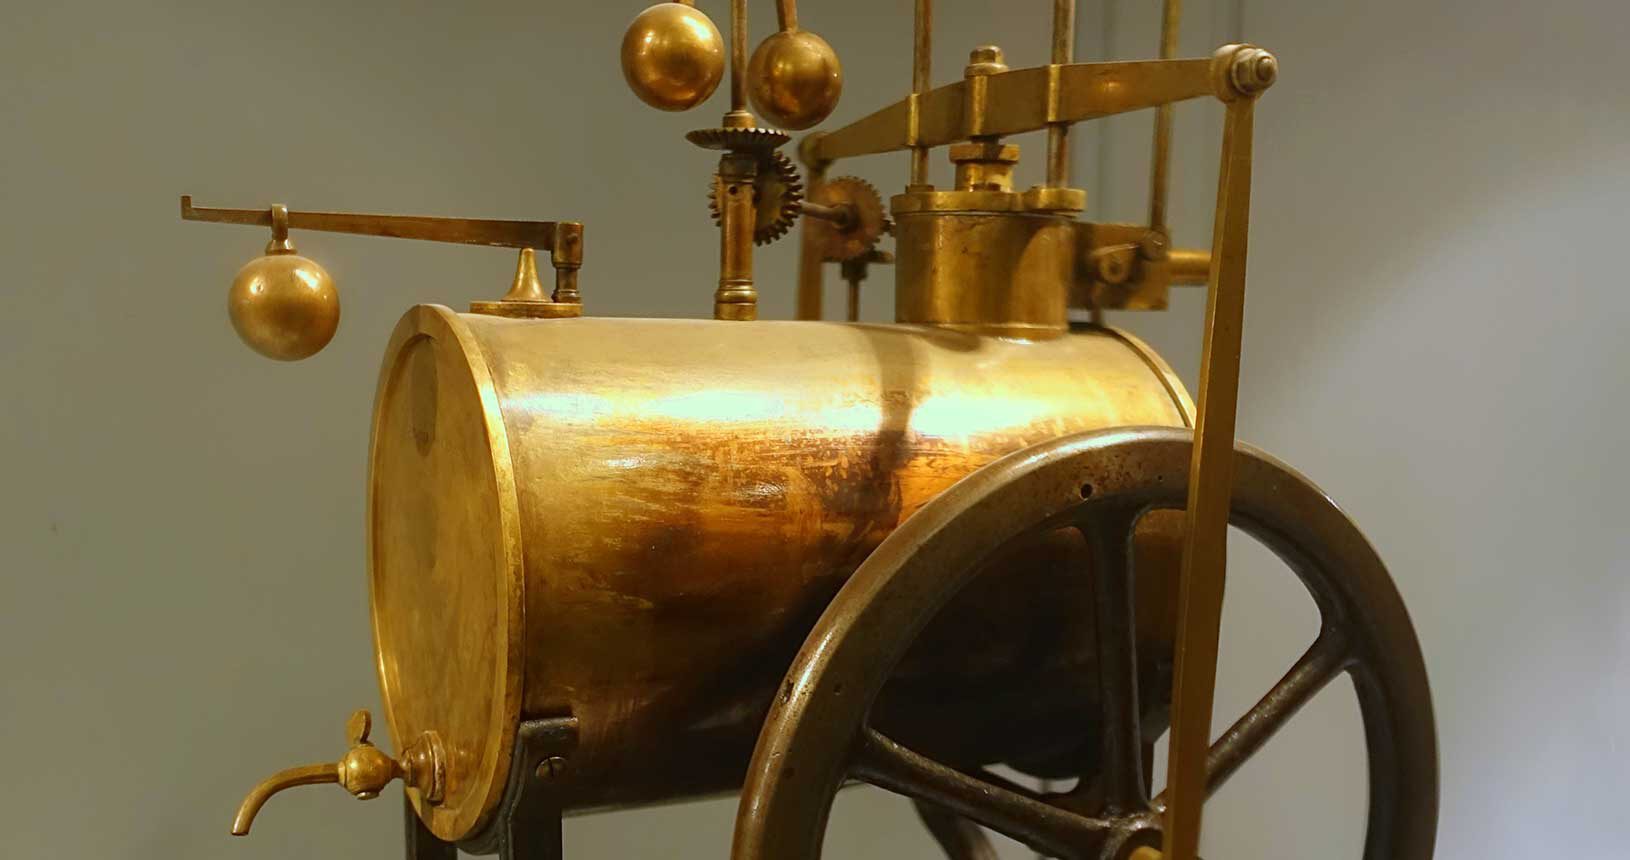 Dampfmaschine von Richard Trevithick (1771-1833), Universität von Coimbra (Portugal) - Public Domain